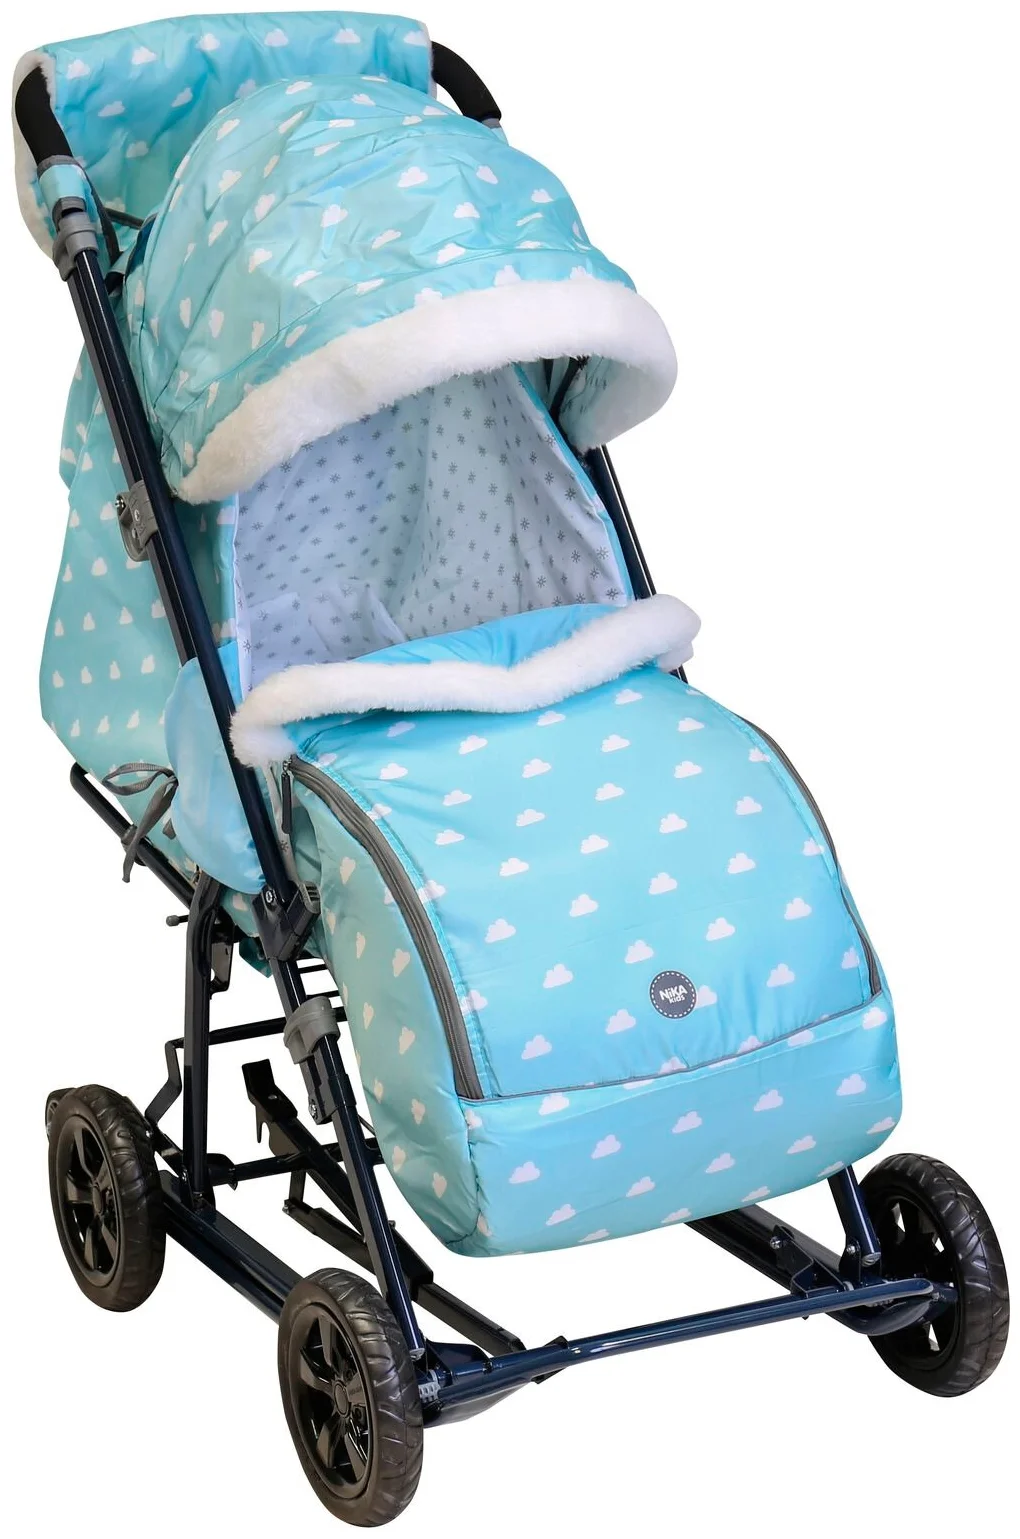 Санки-коляска комбинированная Ника Детям 8-1 с облачками голубой